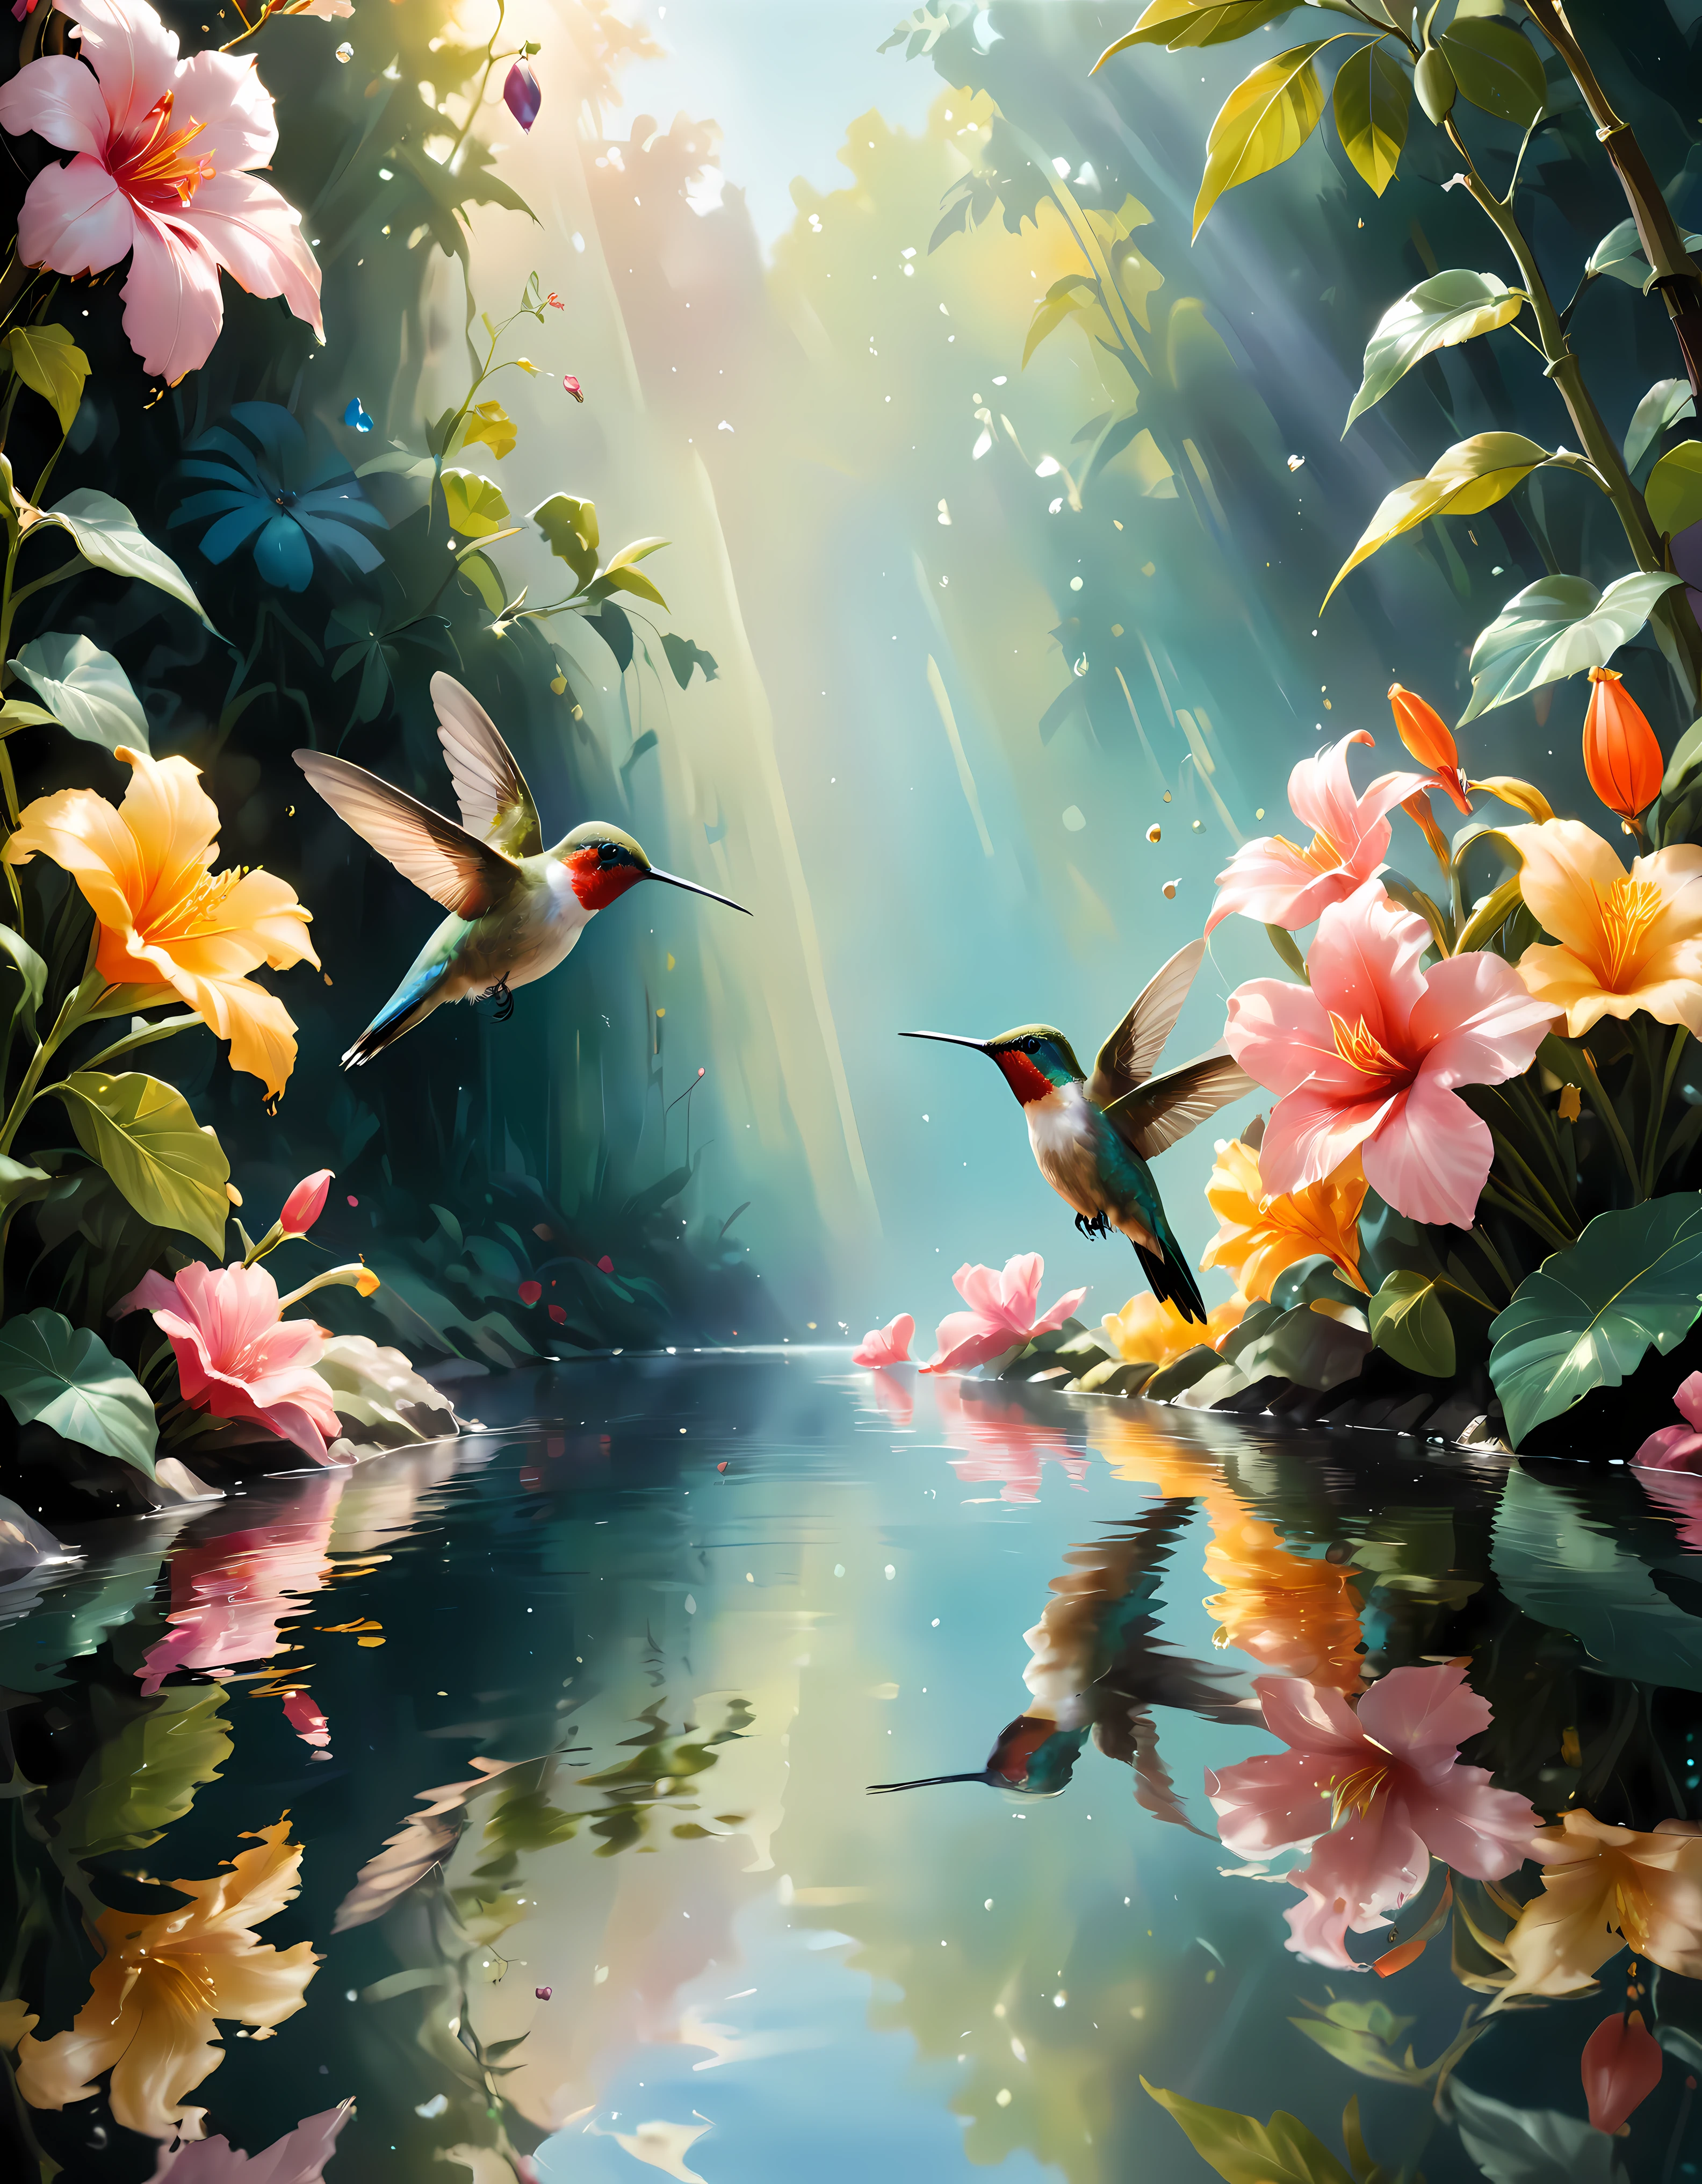 ((Doux_couleur_peinture:)1.5), ((Doux_couleur_tons):1.4), ((fond de réflexion de l&#39;eau cristalline):1.3), ((Doux couleur exotic hummingbirds):1.4)),((macro\ vue sur un jardin fleuri):1.2),((Images fixes et angles dynamiques dignes d&#39;un film):1.3), ((silhouette d&#39;ombre cool et belle):1.1), Gouache aux détails complexes, Ajoutez une touche de réalisme à ce chef-d&#39;œuvre visuellement détaillé et stylistiquement diversifié.,  Les coups de pinceau détaillés ont été améliorés, Un travail de pinceau soigné crée une atmosphère, Utiliser des techniques de coup de pinceau délicates mais puissantes, Créez une atmosphère enchanteresse. gouache très détaillée, ((Netteté et clarté inégalées):1.1), ((Radiosité rendue dans une superbe résolution 32K):1.3), Le tout capturé avec une mise au point nette.